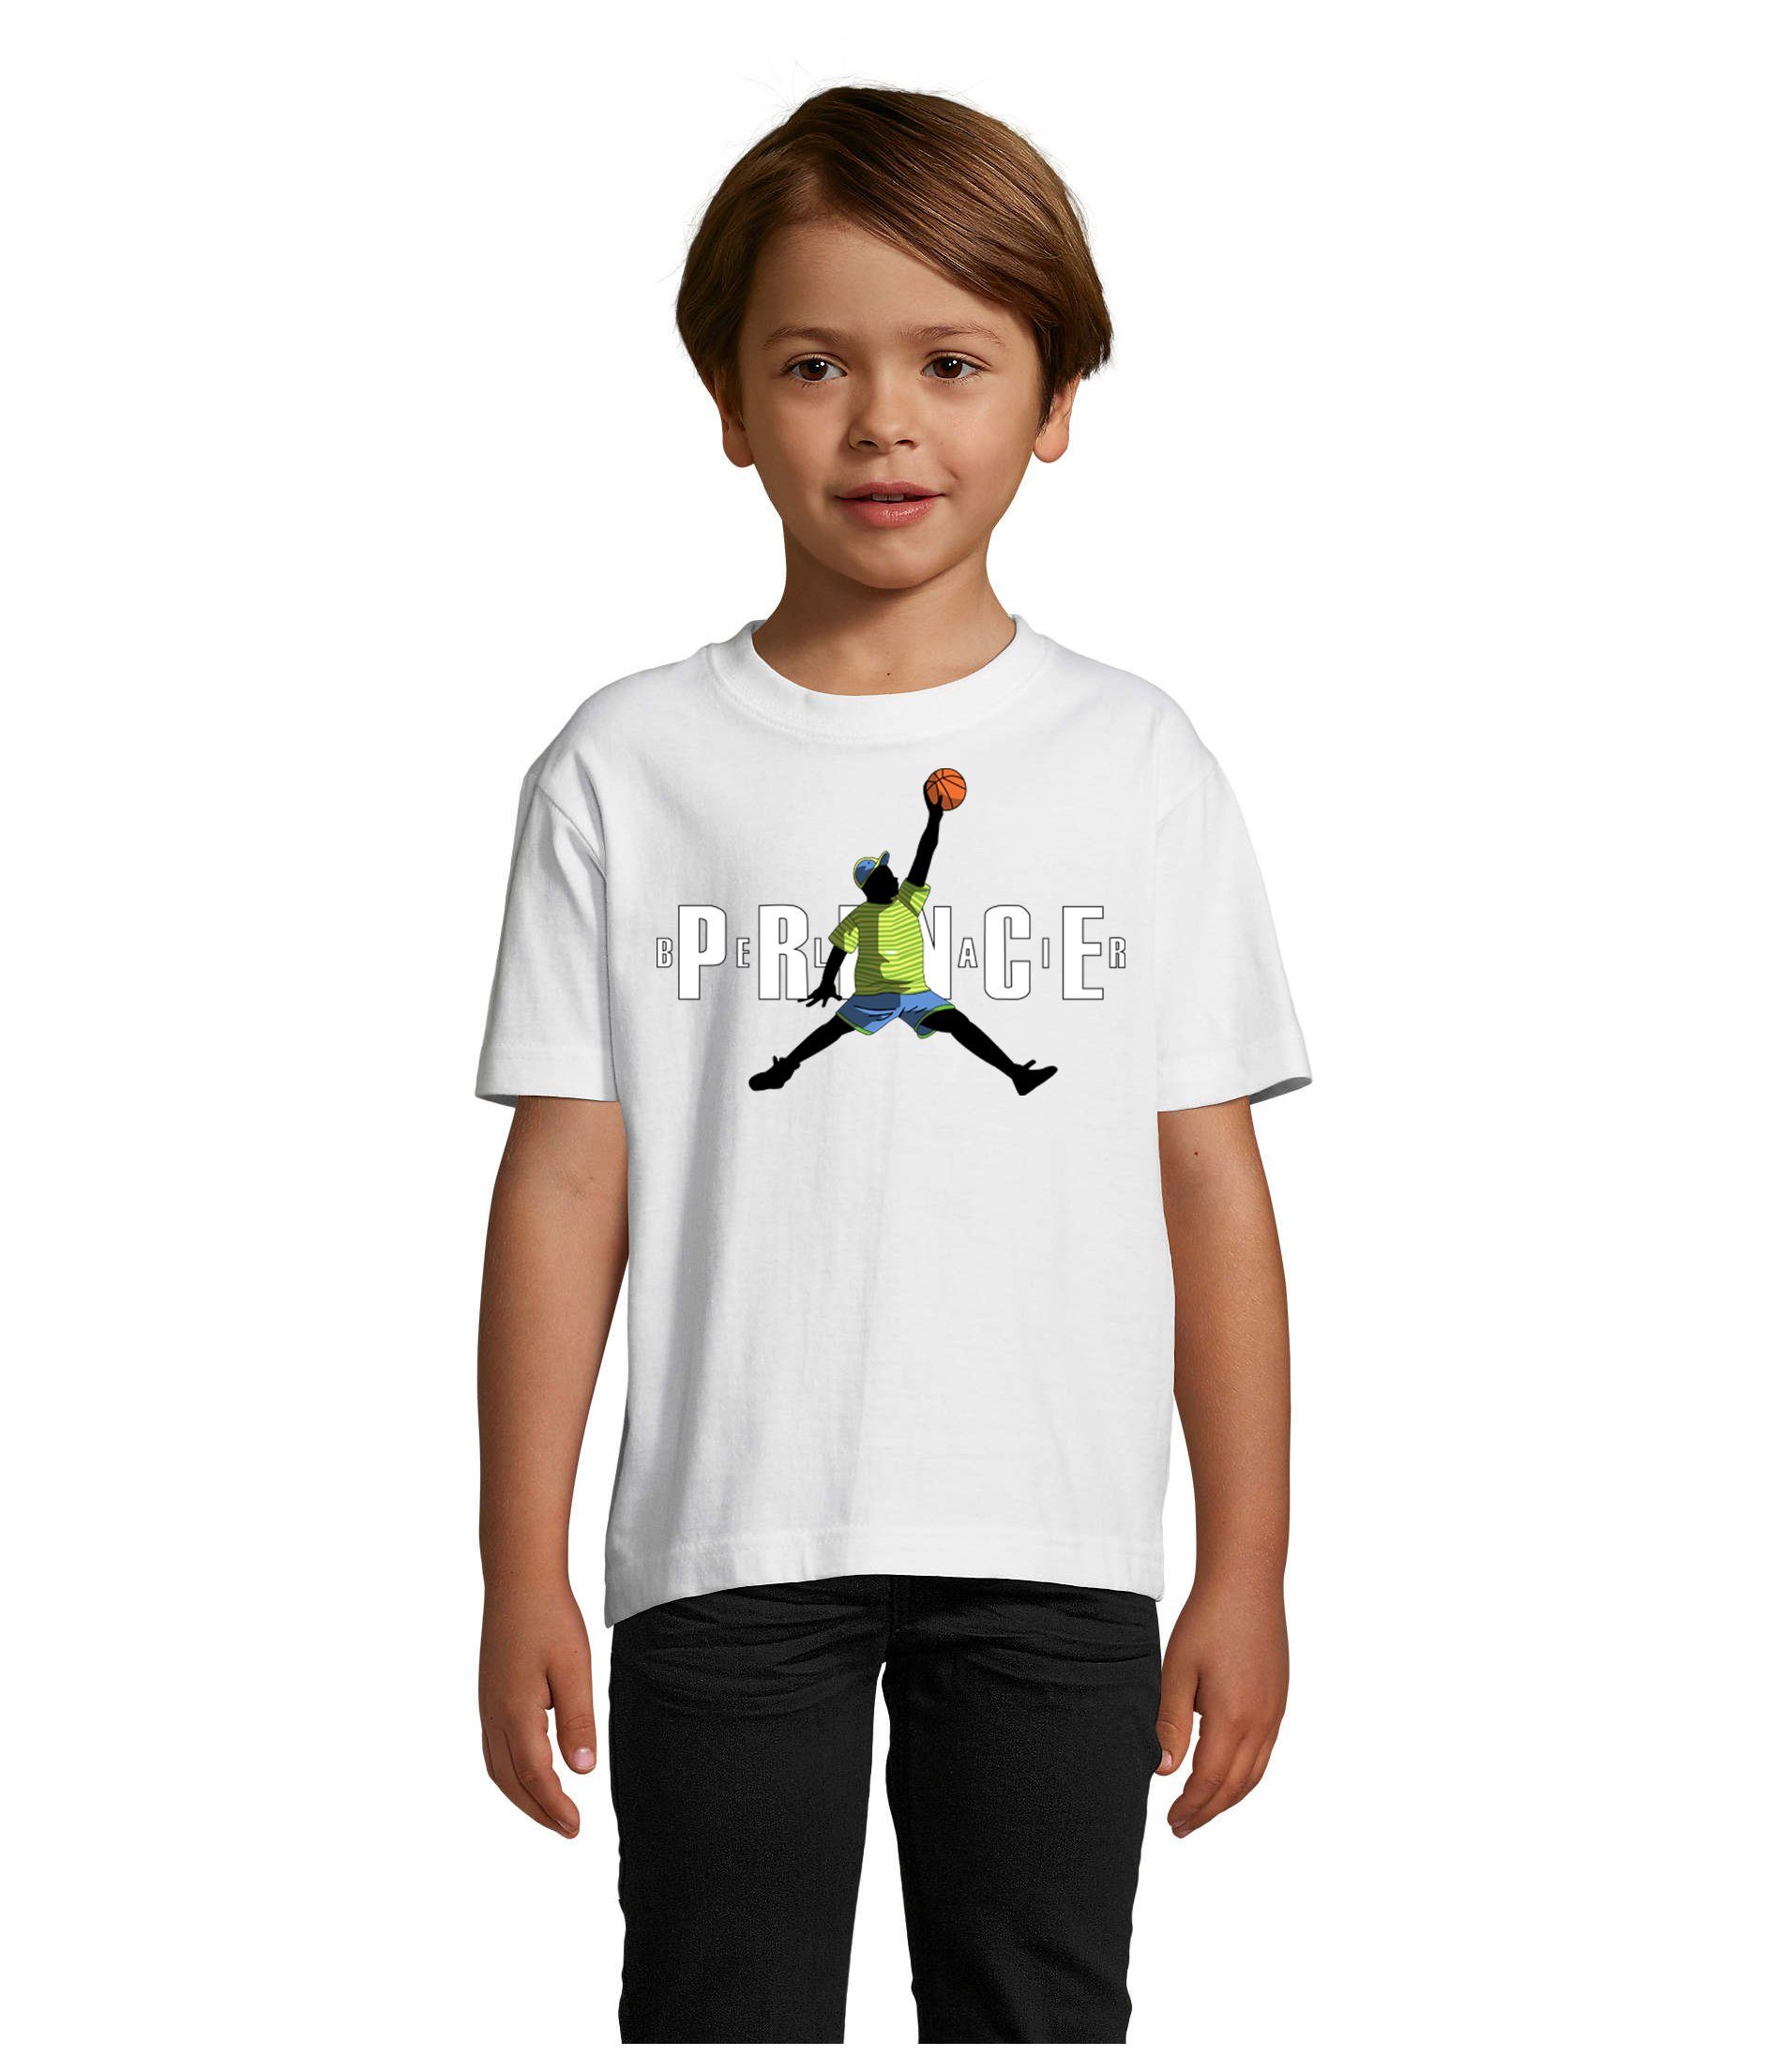 Blondie & Brownie T-Shirt Kinder Jungen & Mädchen Fresh Prince Bel Air Basketball in vielen Farben Weiß